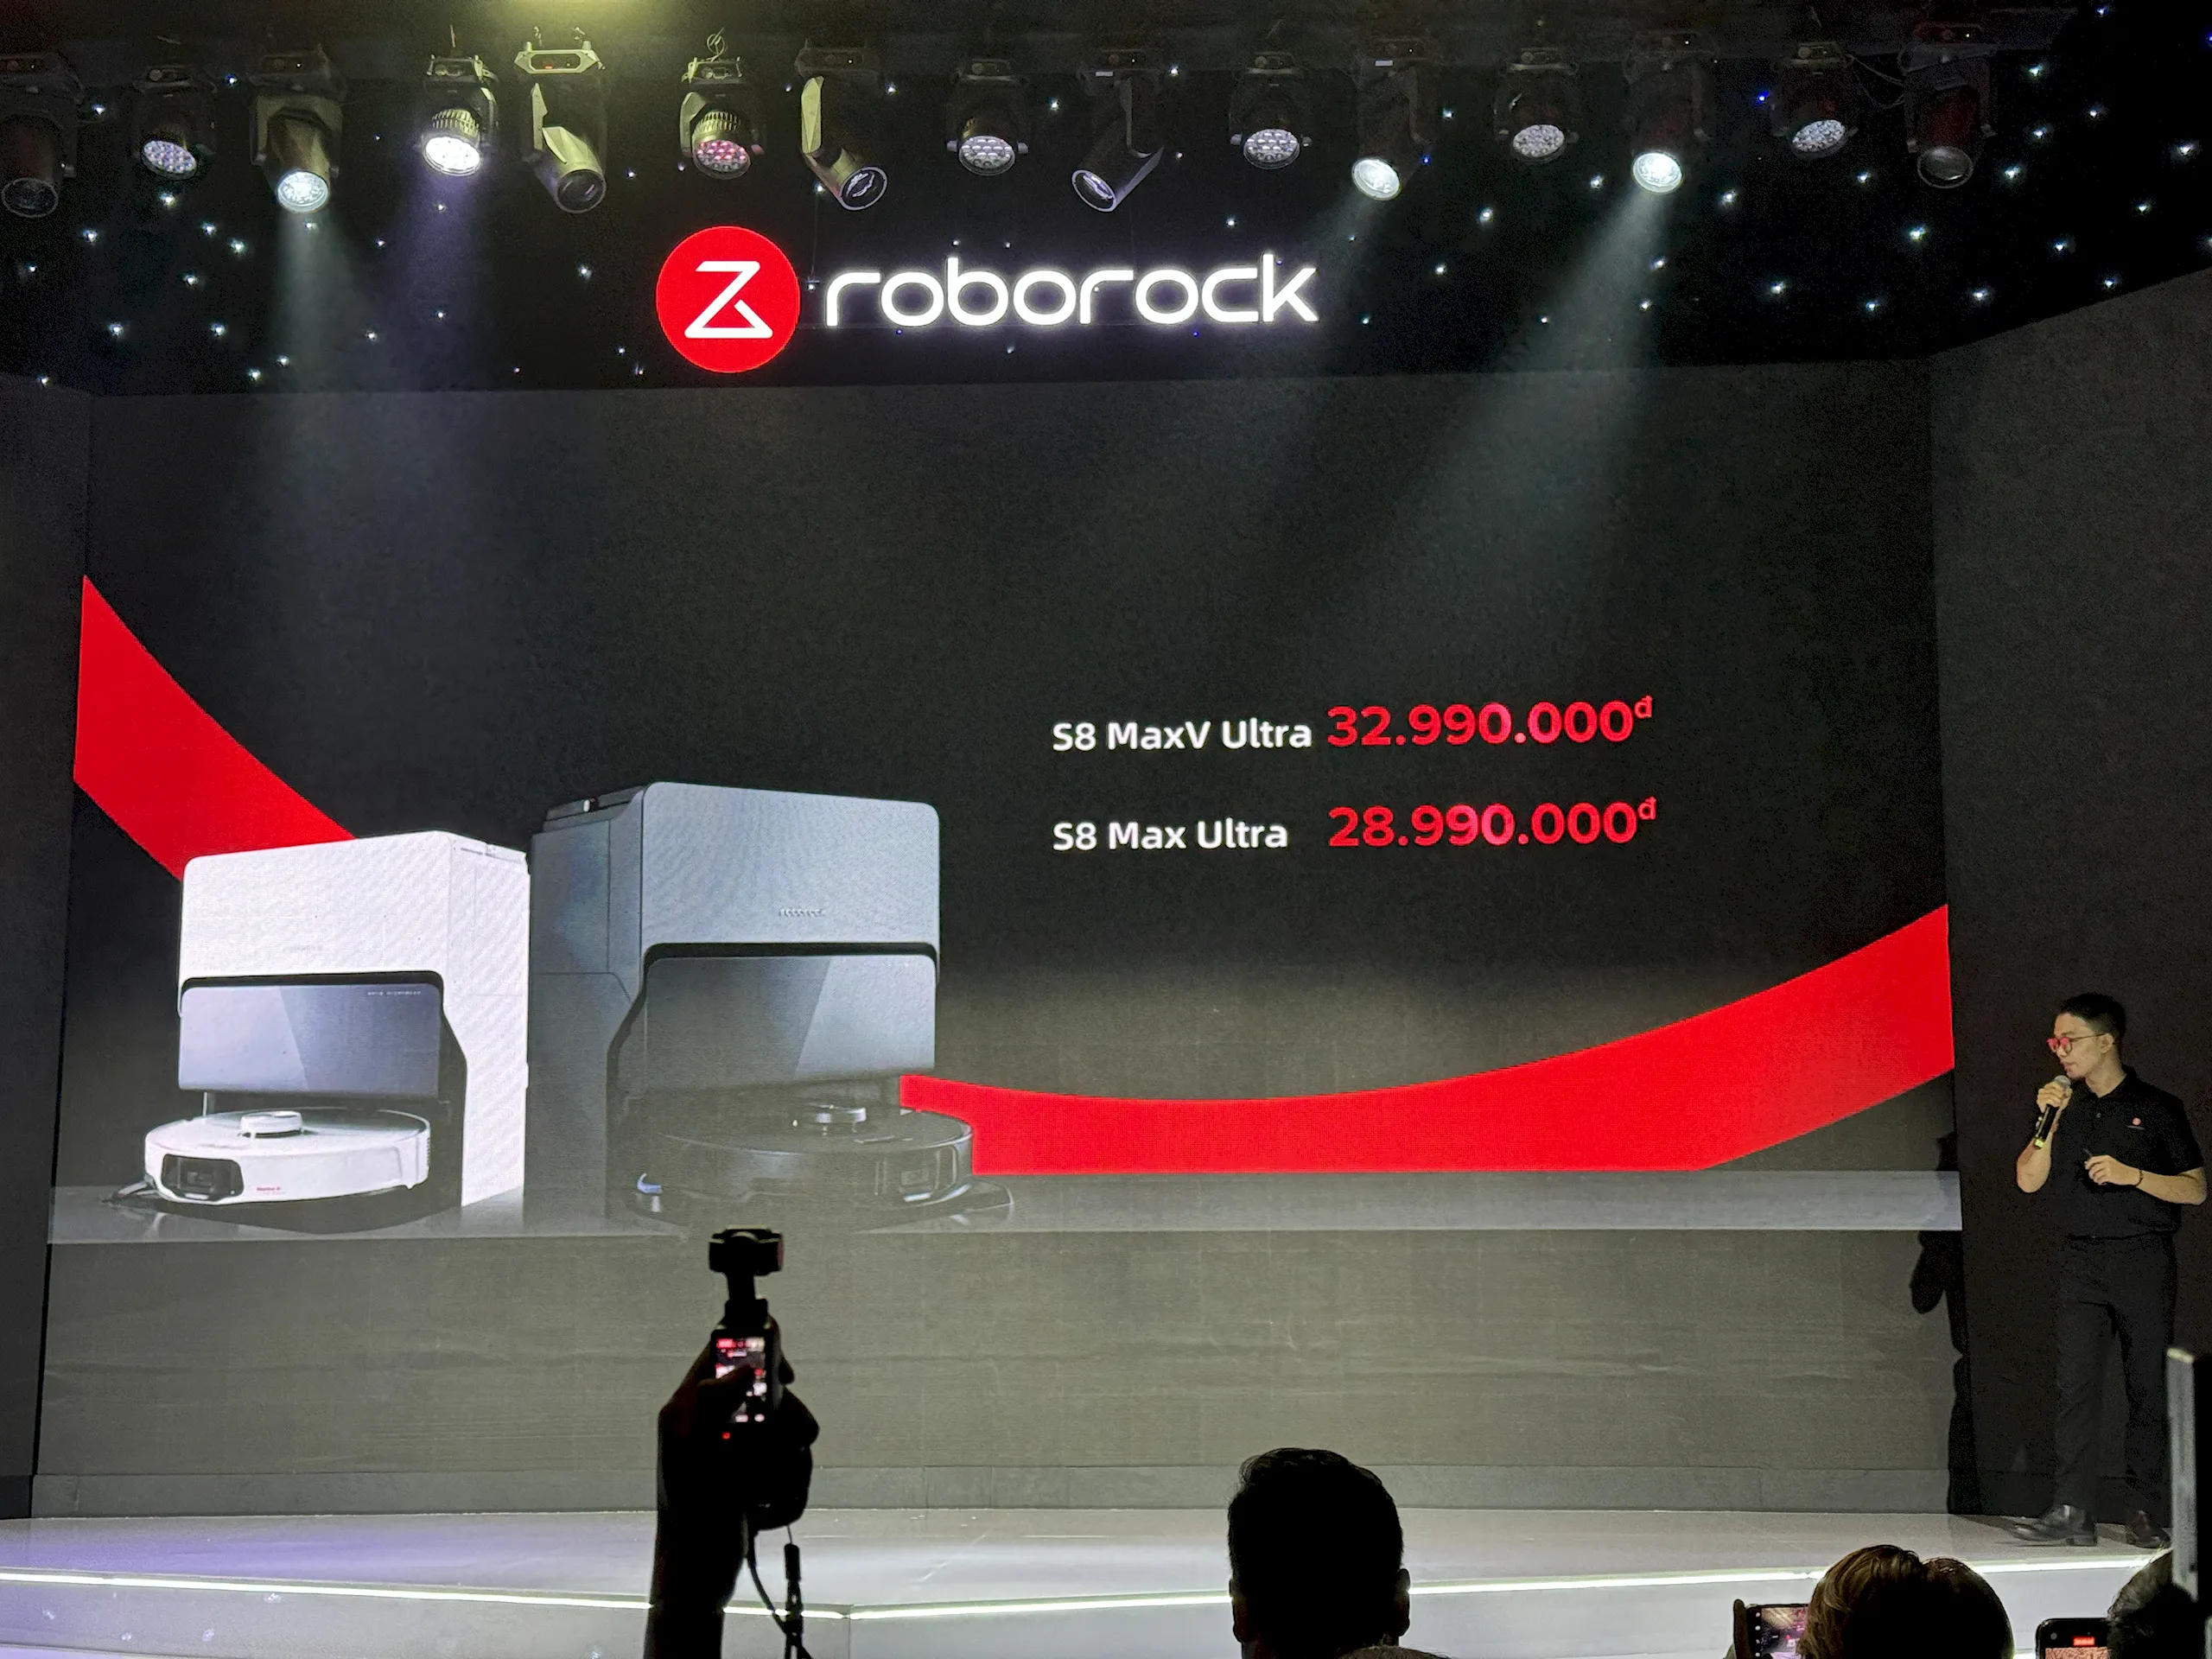 Roborock ra mắt 5 sản phẩm Robot hút bụi thông minh và Máy hút bụi cầm tay không dây giá từ 9,490,000 VND